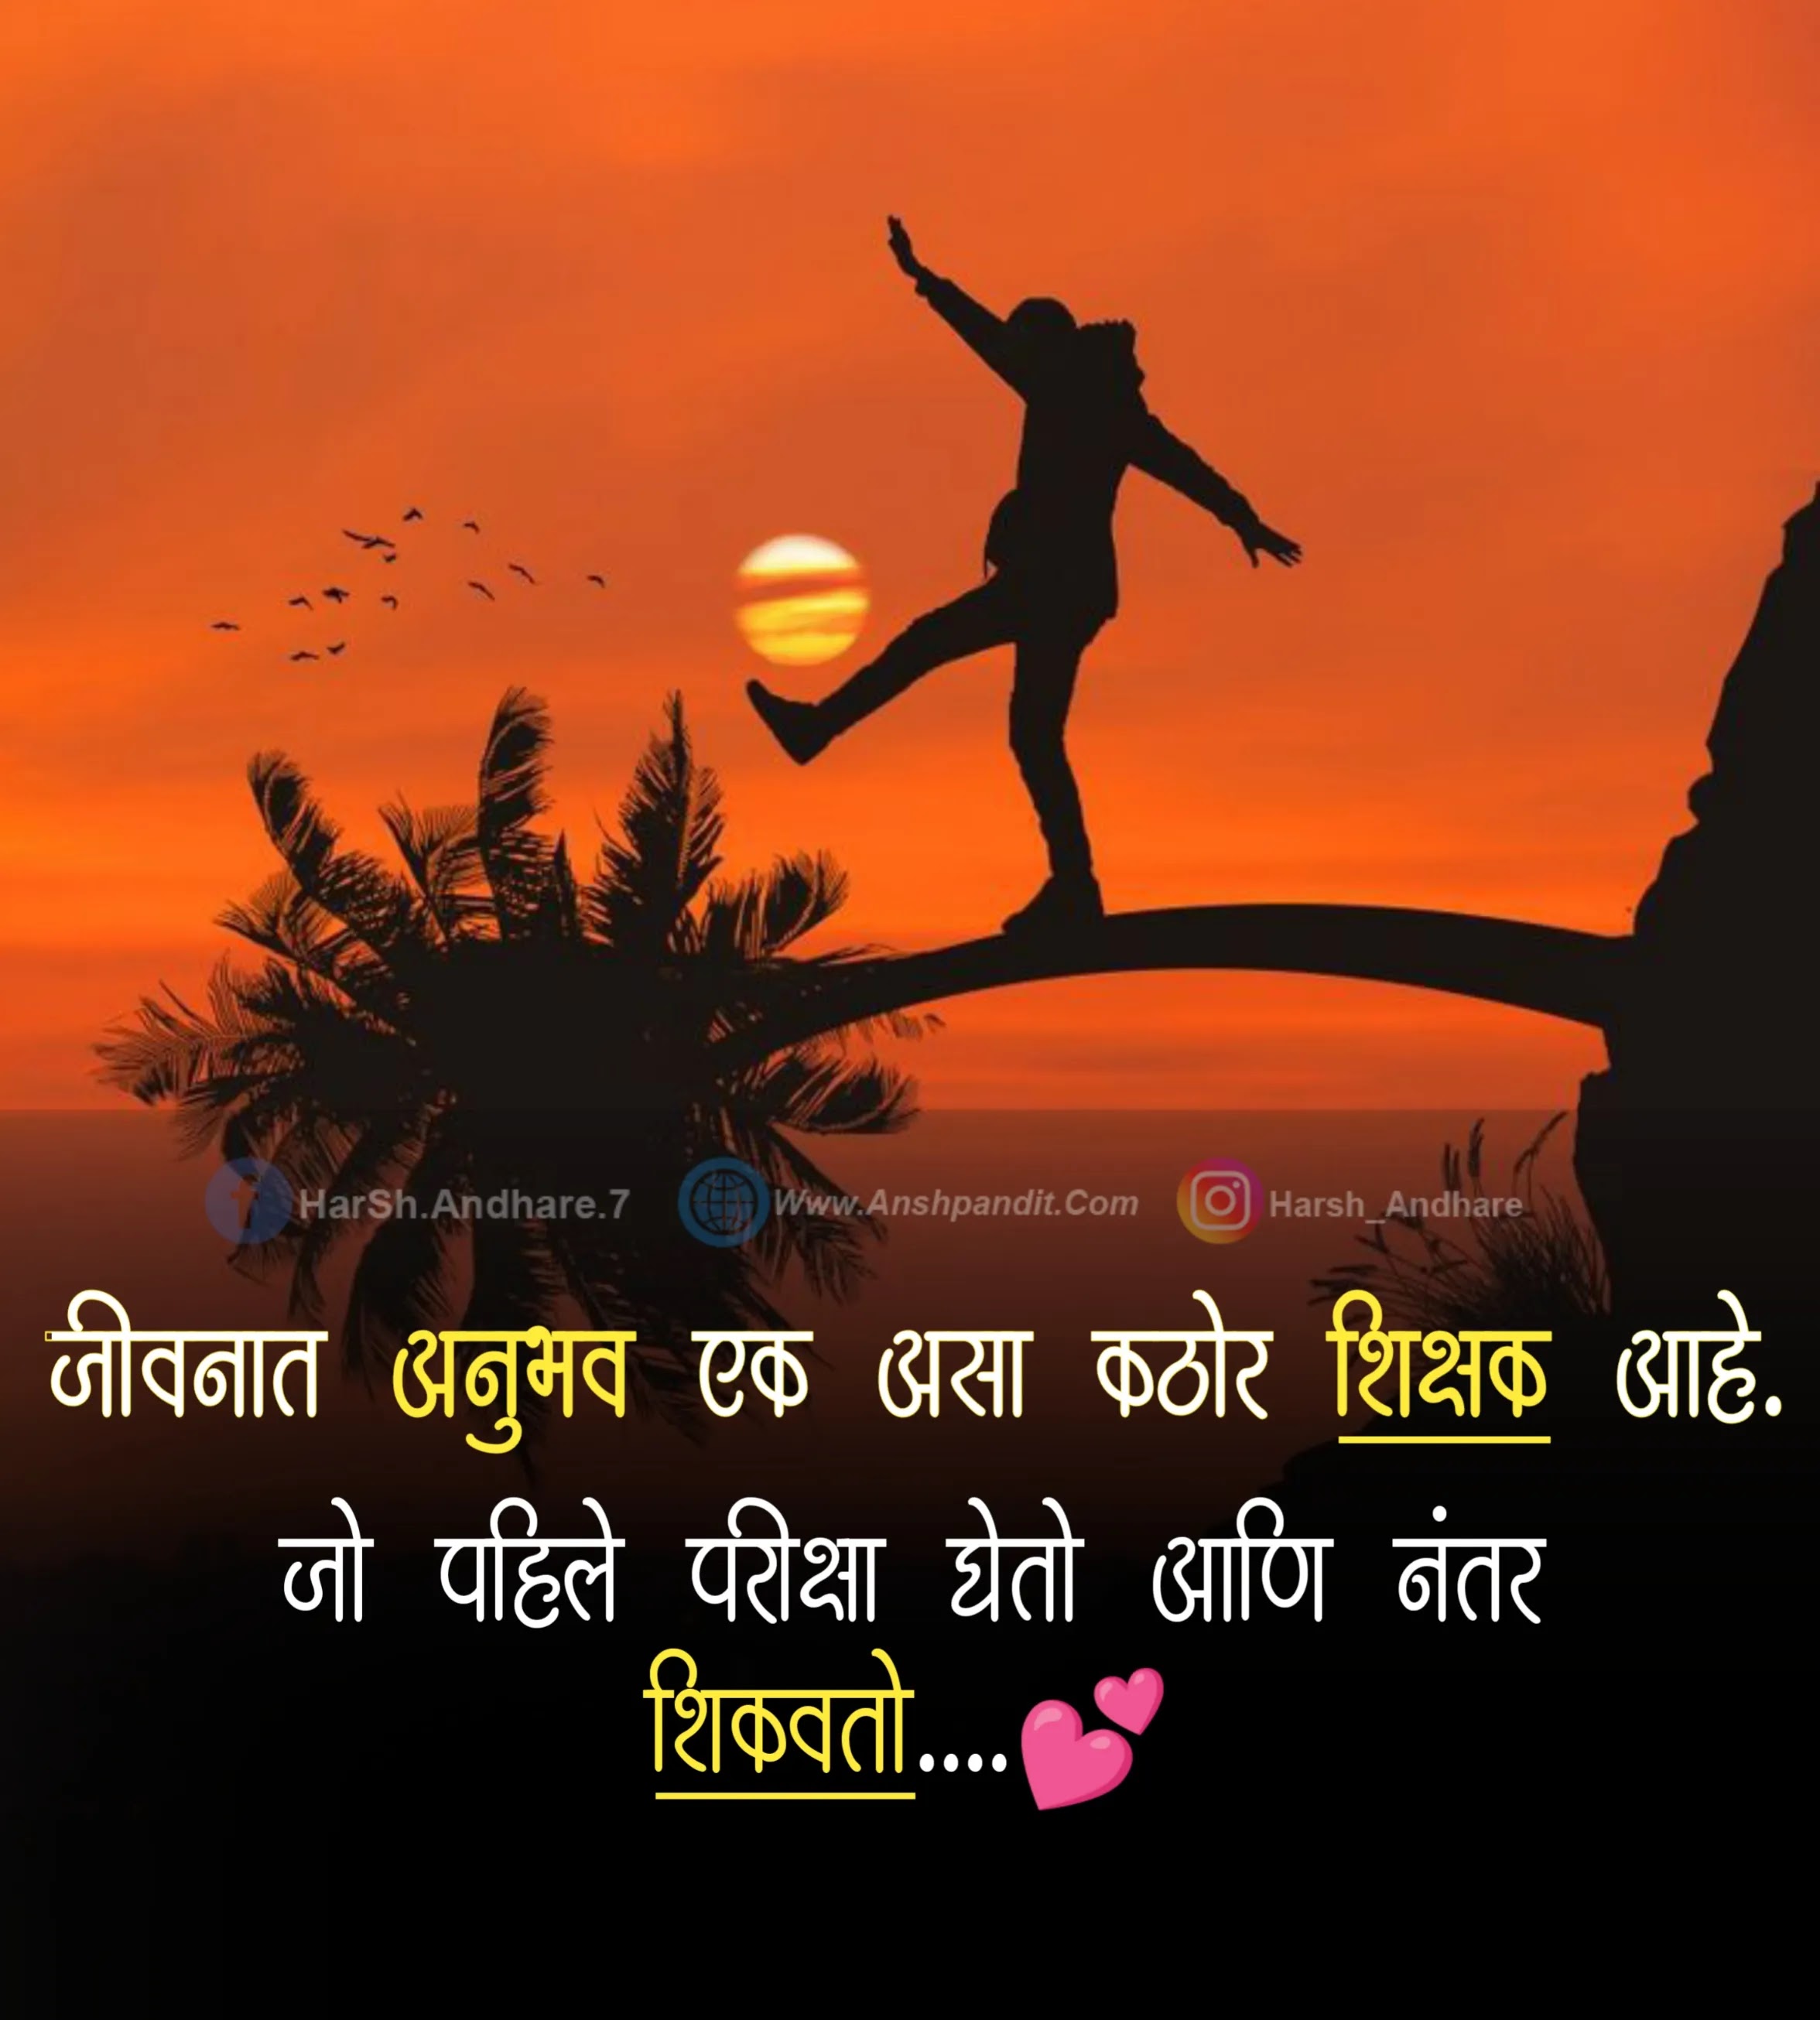 Happy Life Quotes Marathi